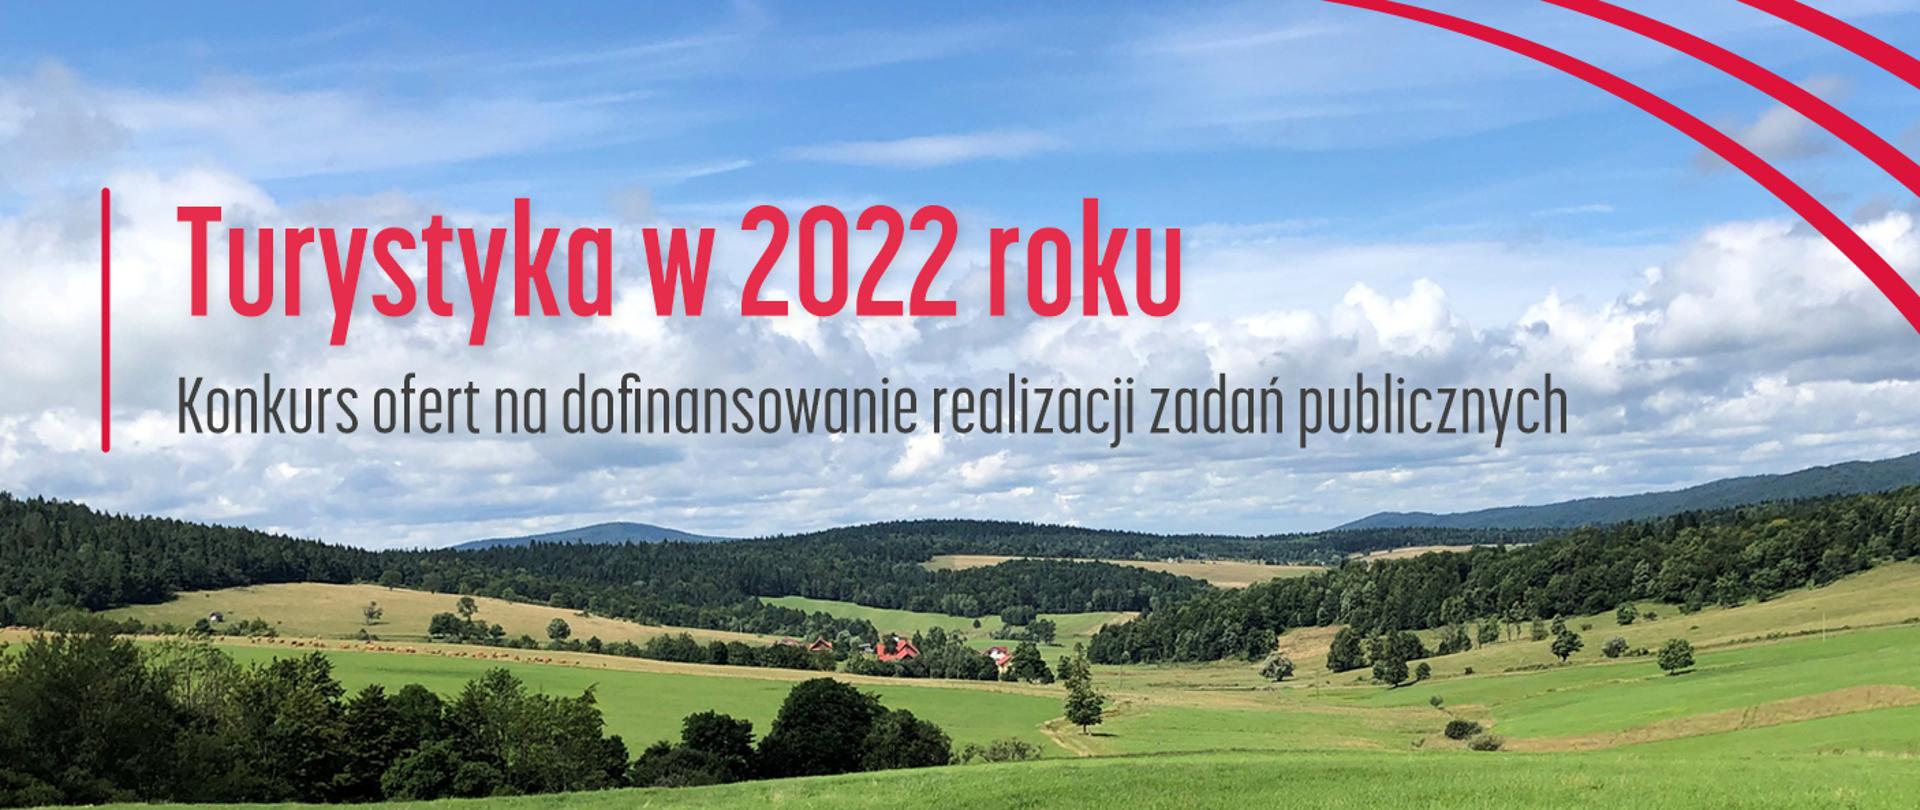 Turystyka w 2022 roku - konkurs ofert na dofinansowanie zadań publicznych